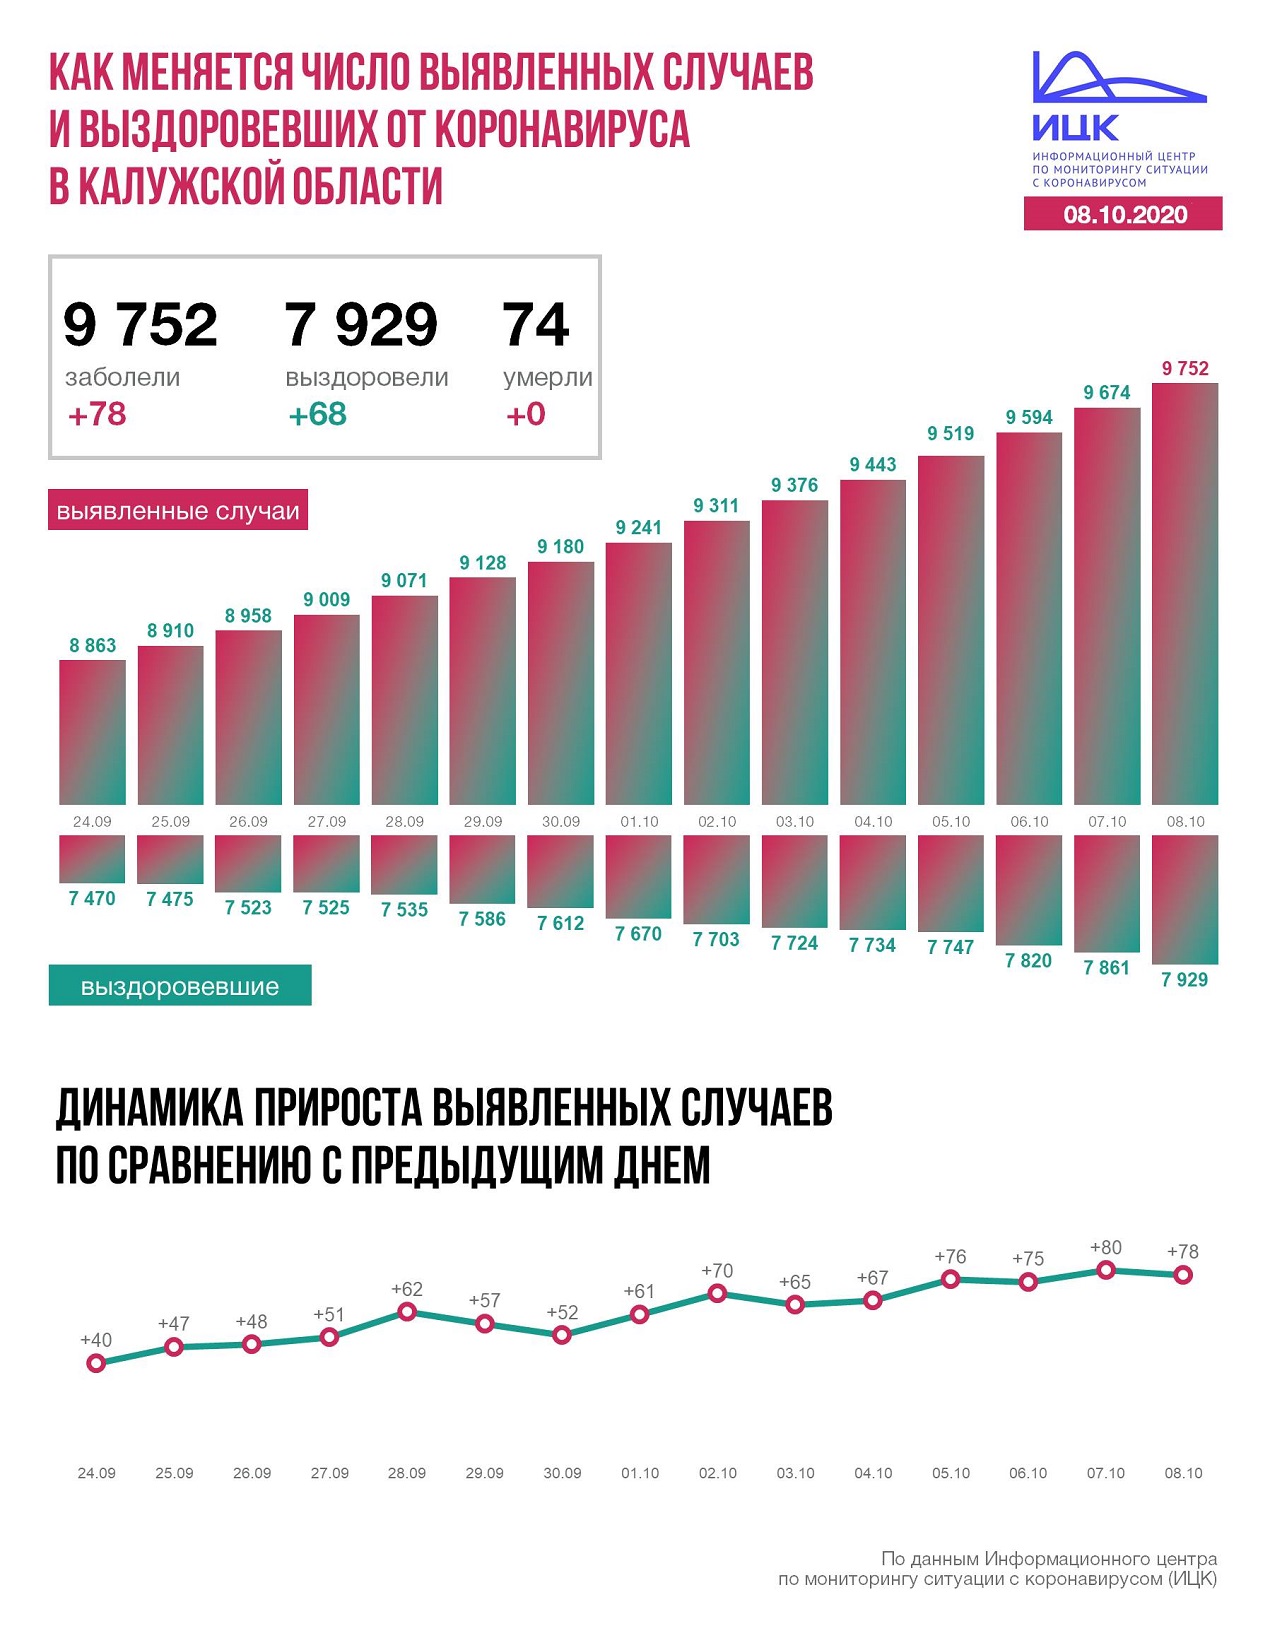 Официальная статистика по коронавирусу в Калужской области.